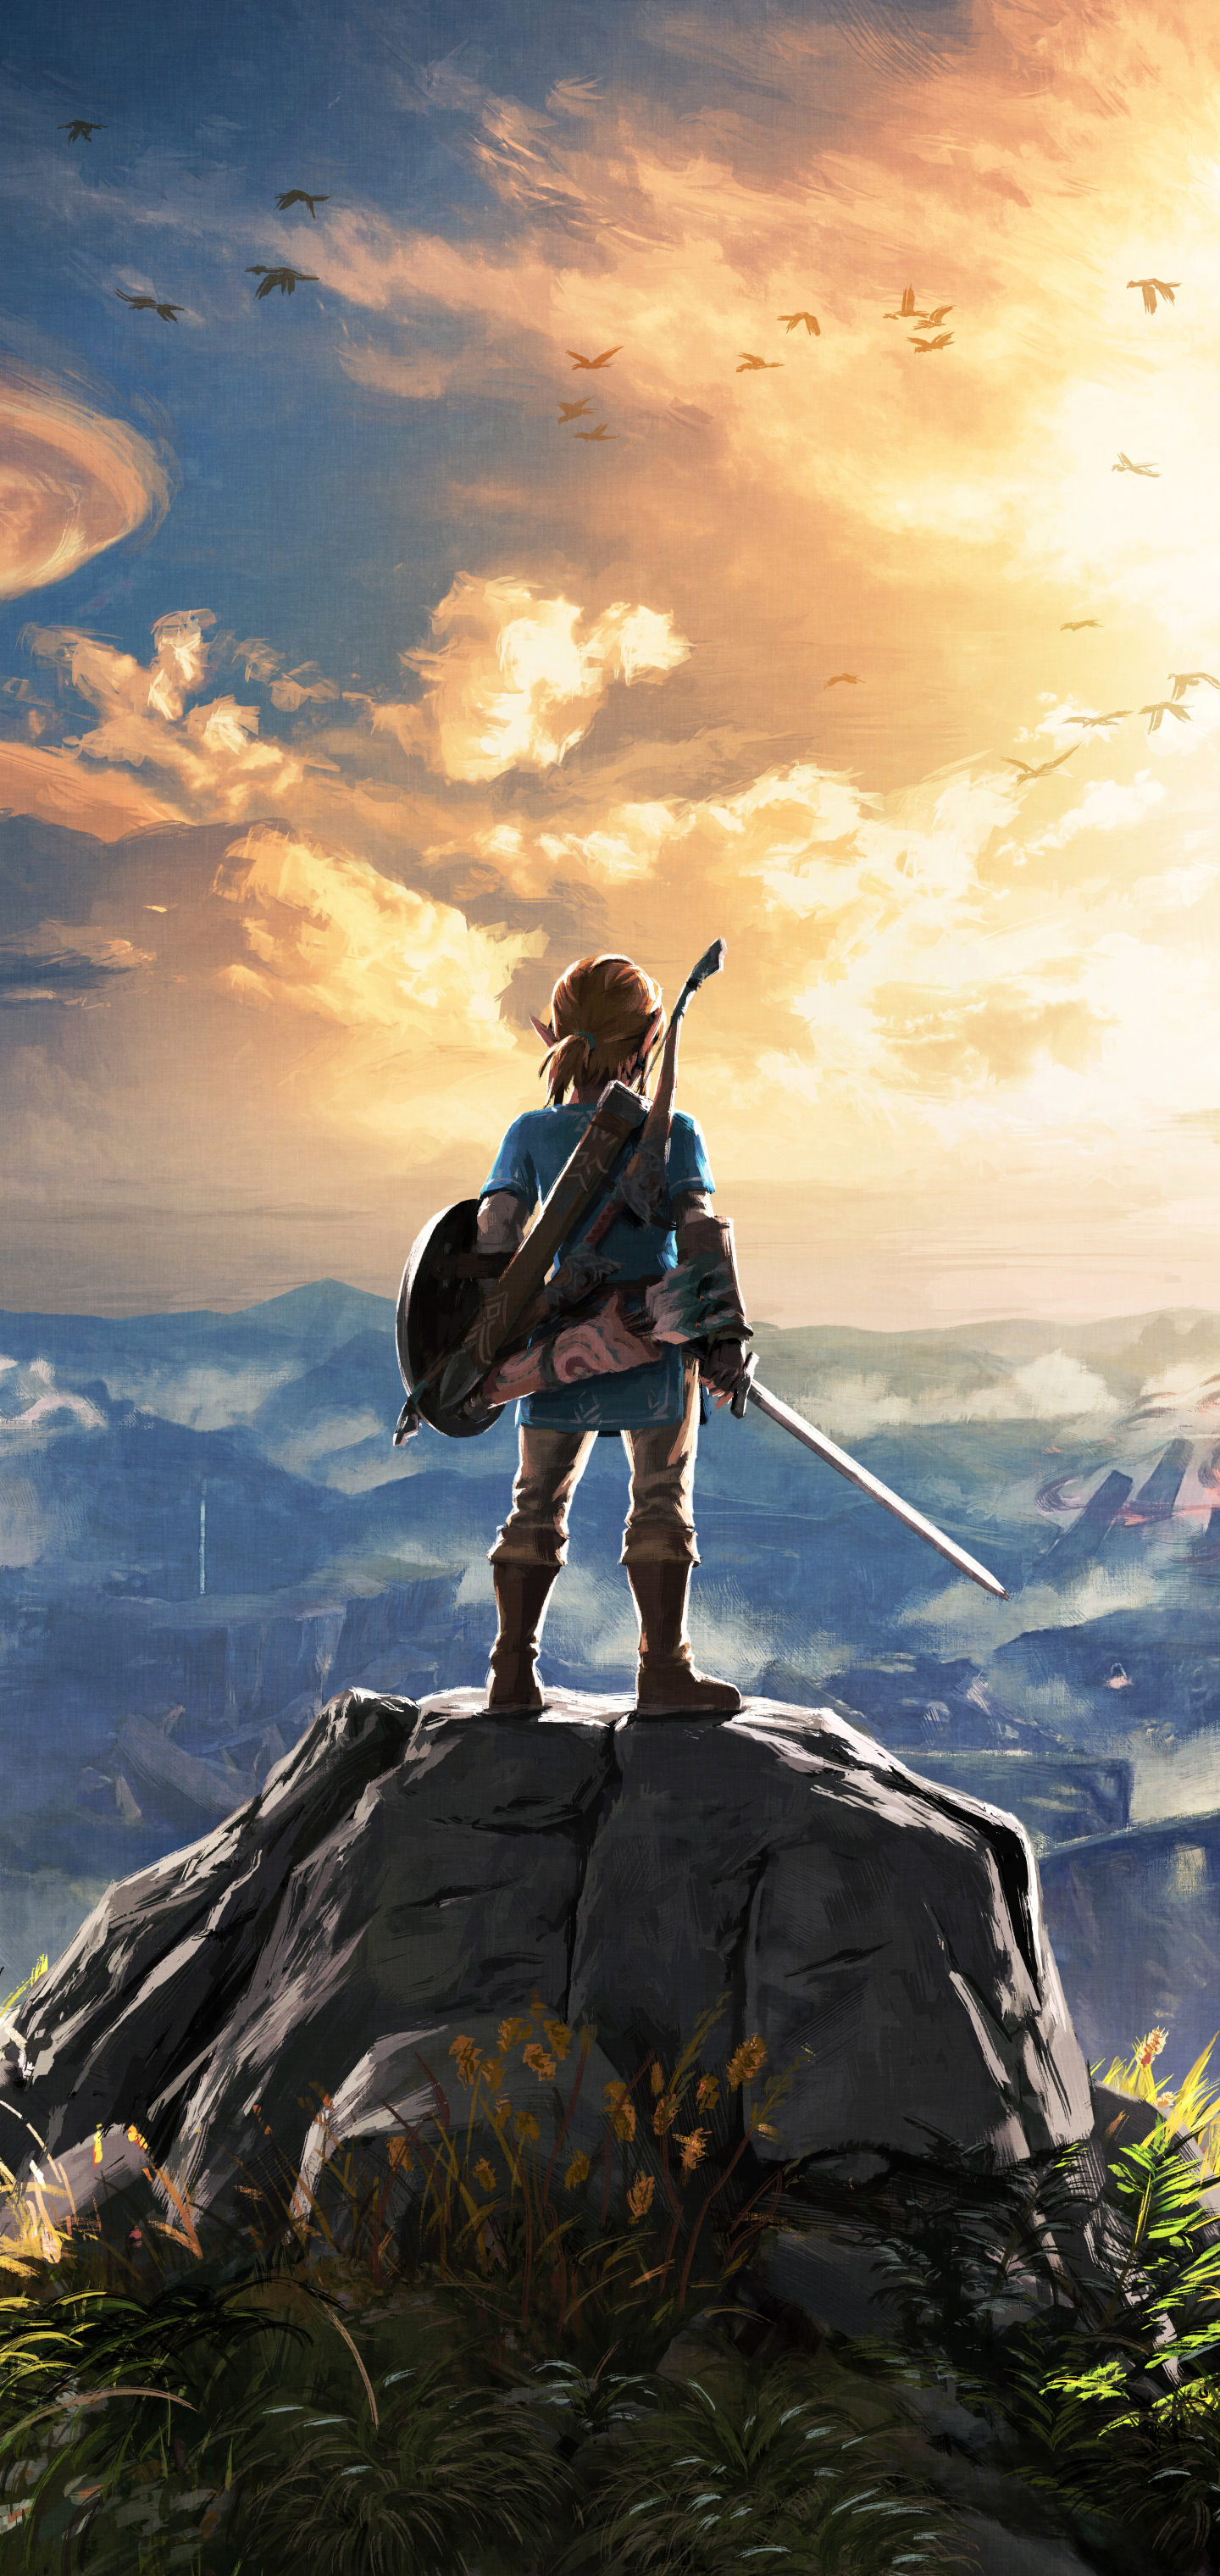 Horizontal Wallpaper The Legend Of Zelda: Breath Of The Wild 